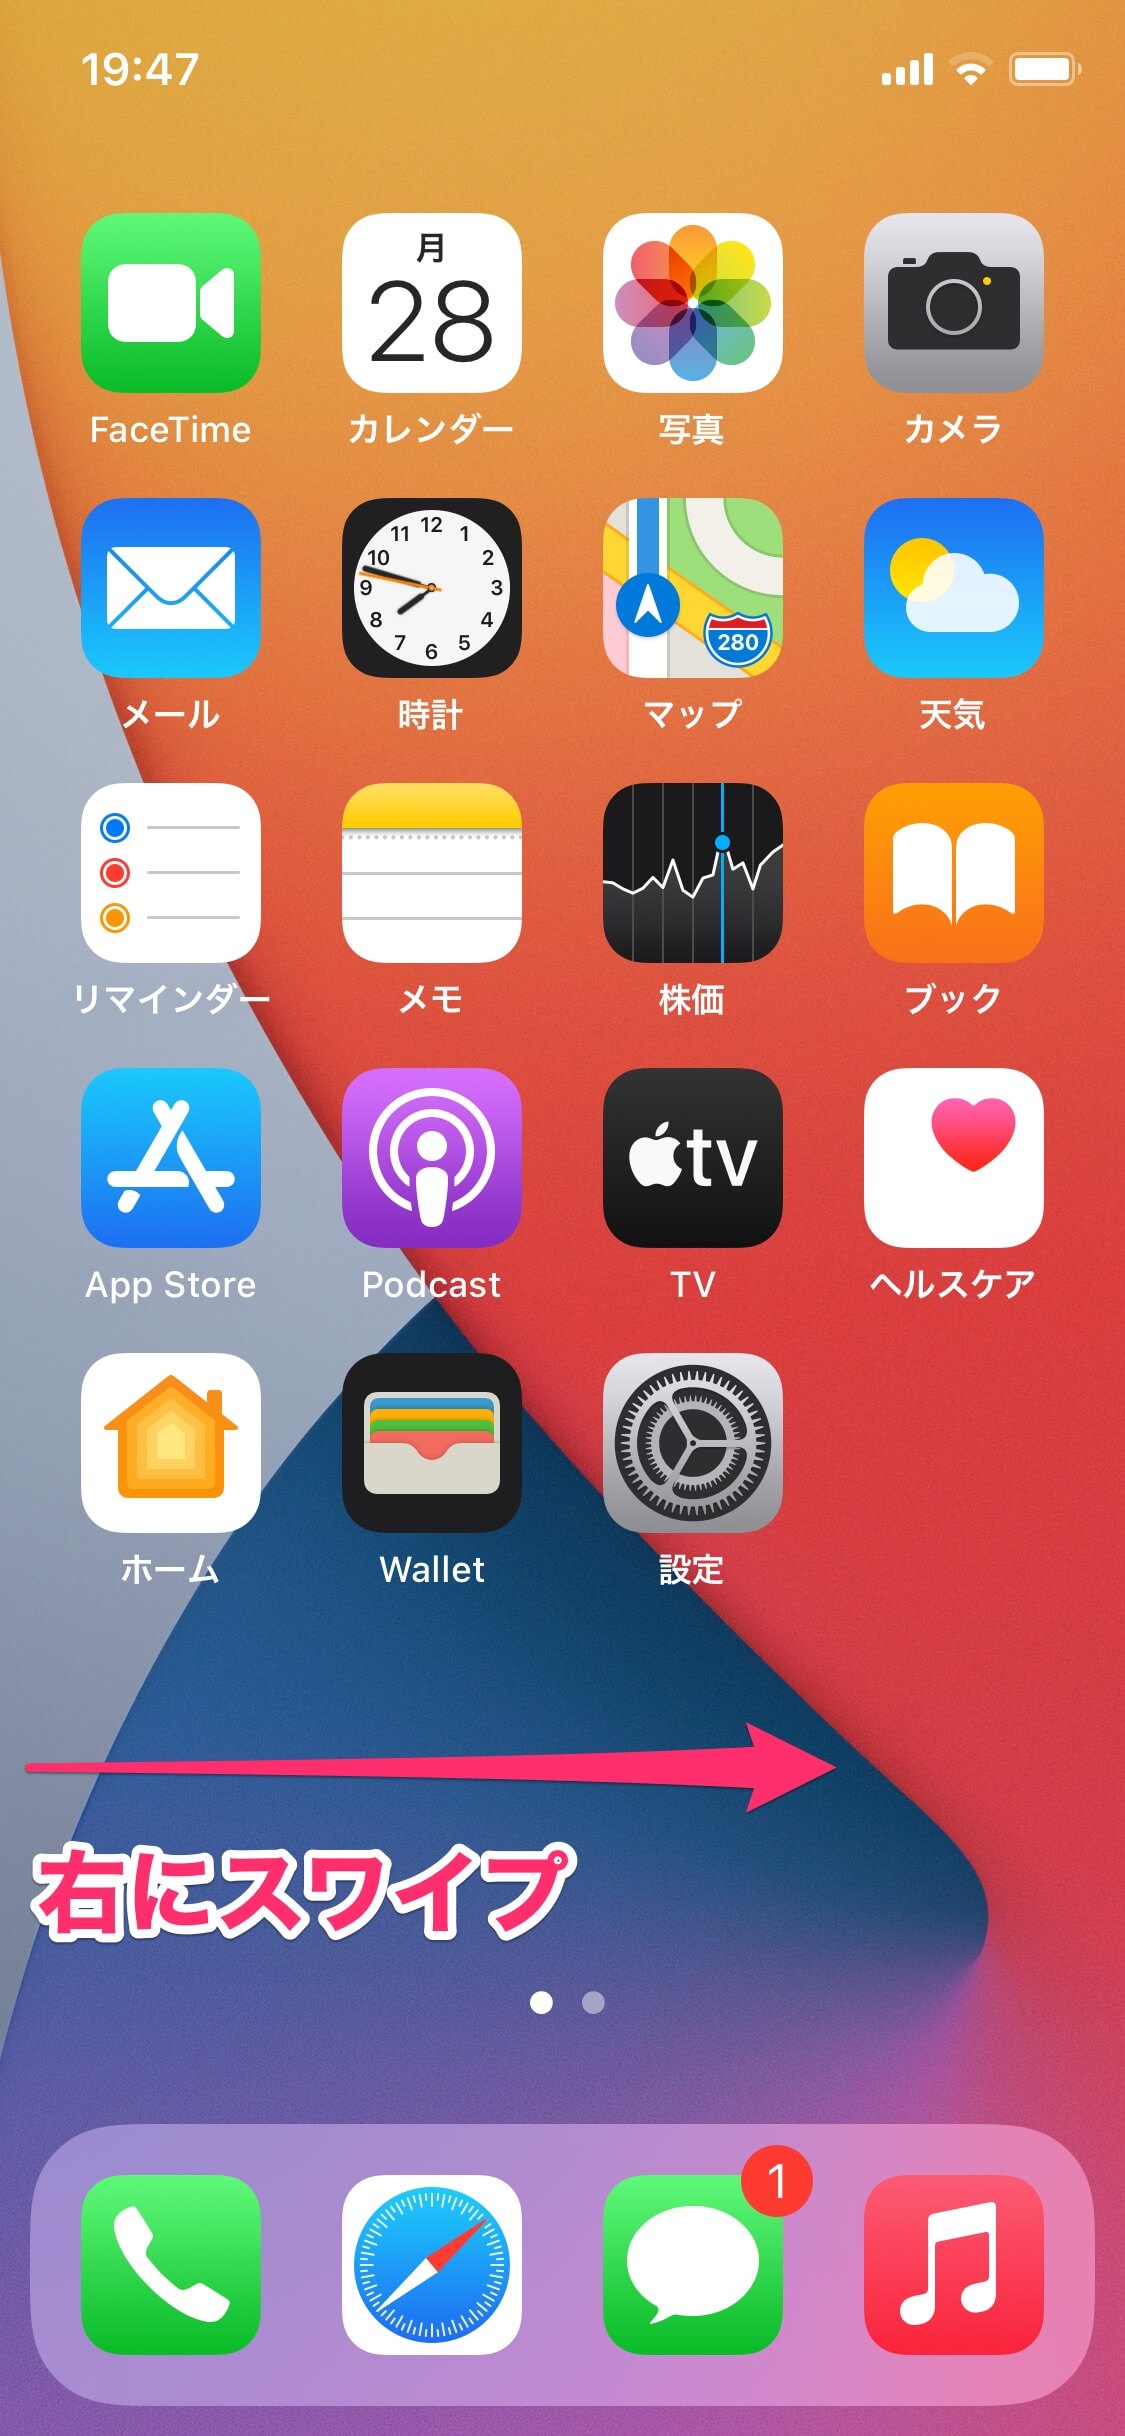 【iOS 14】新機能「ウィジェット」の基本。ホーム画面に天気予報やカレンダーの予定を配置できる